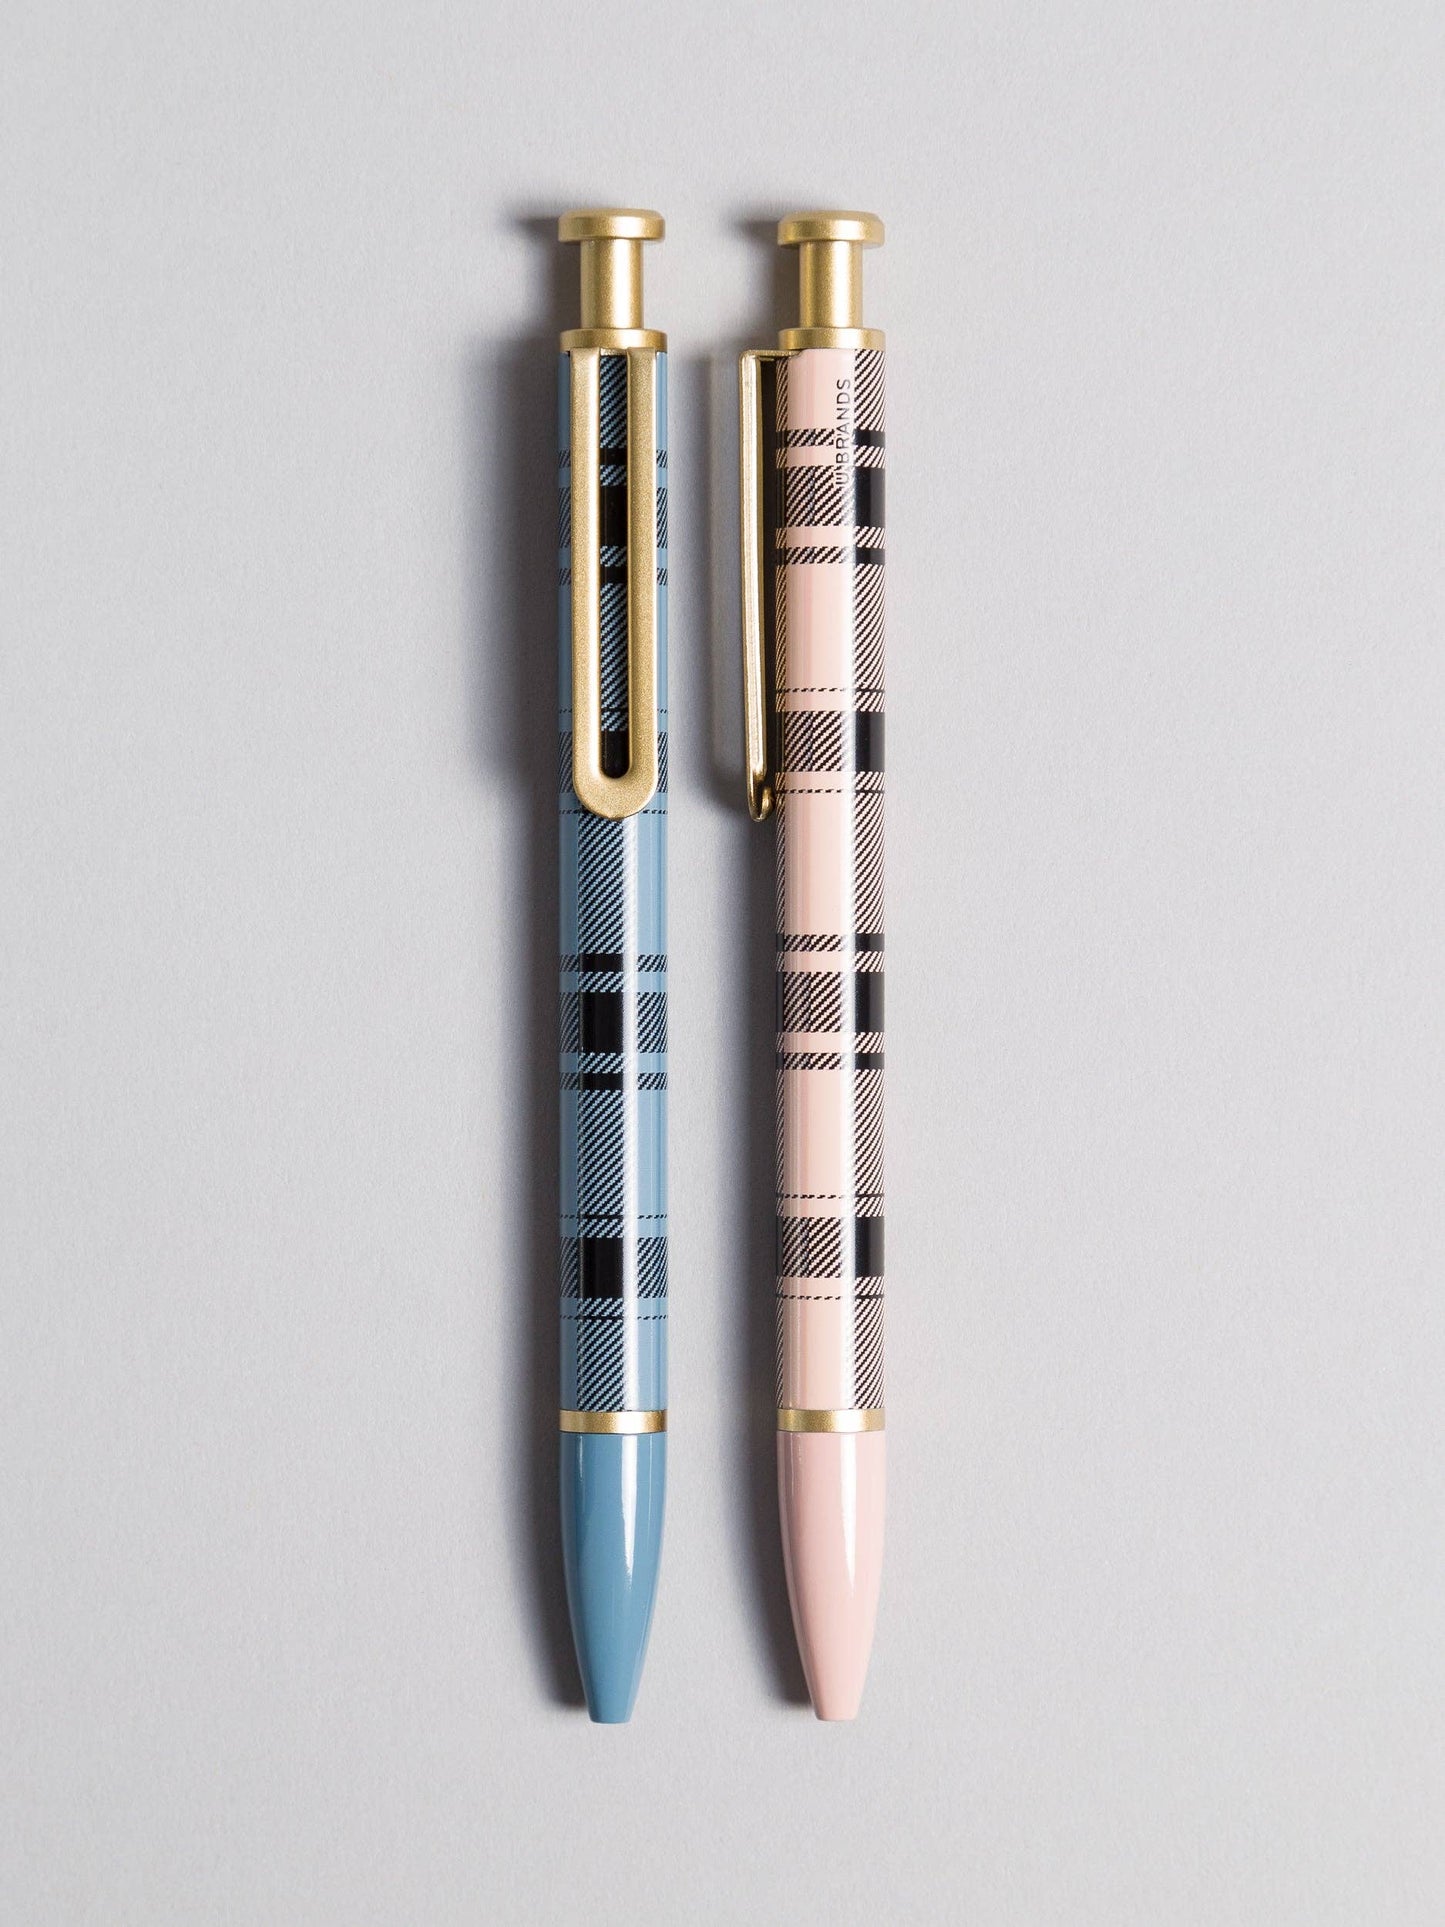 U Brands - Clueless Monterey Ballpoint Pens, Set of 2